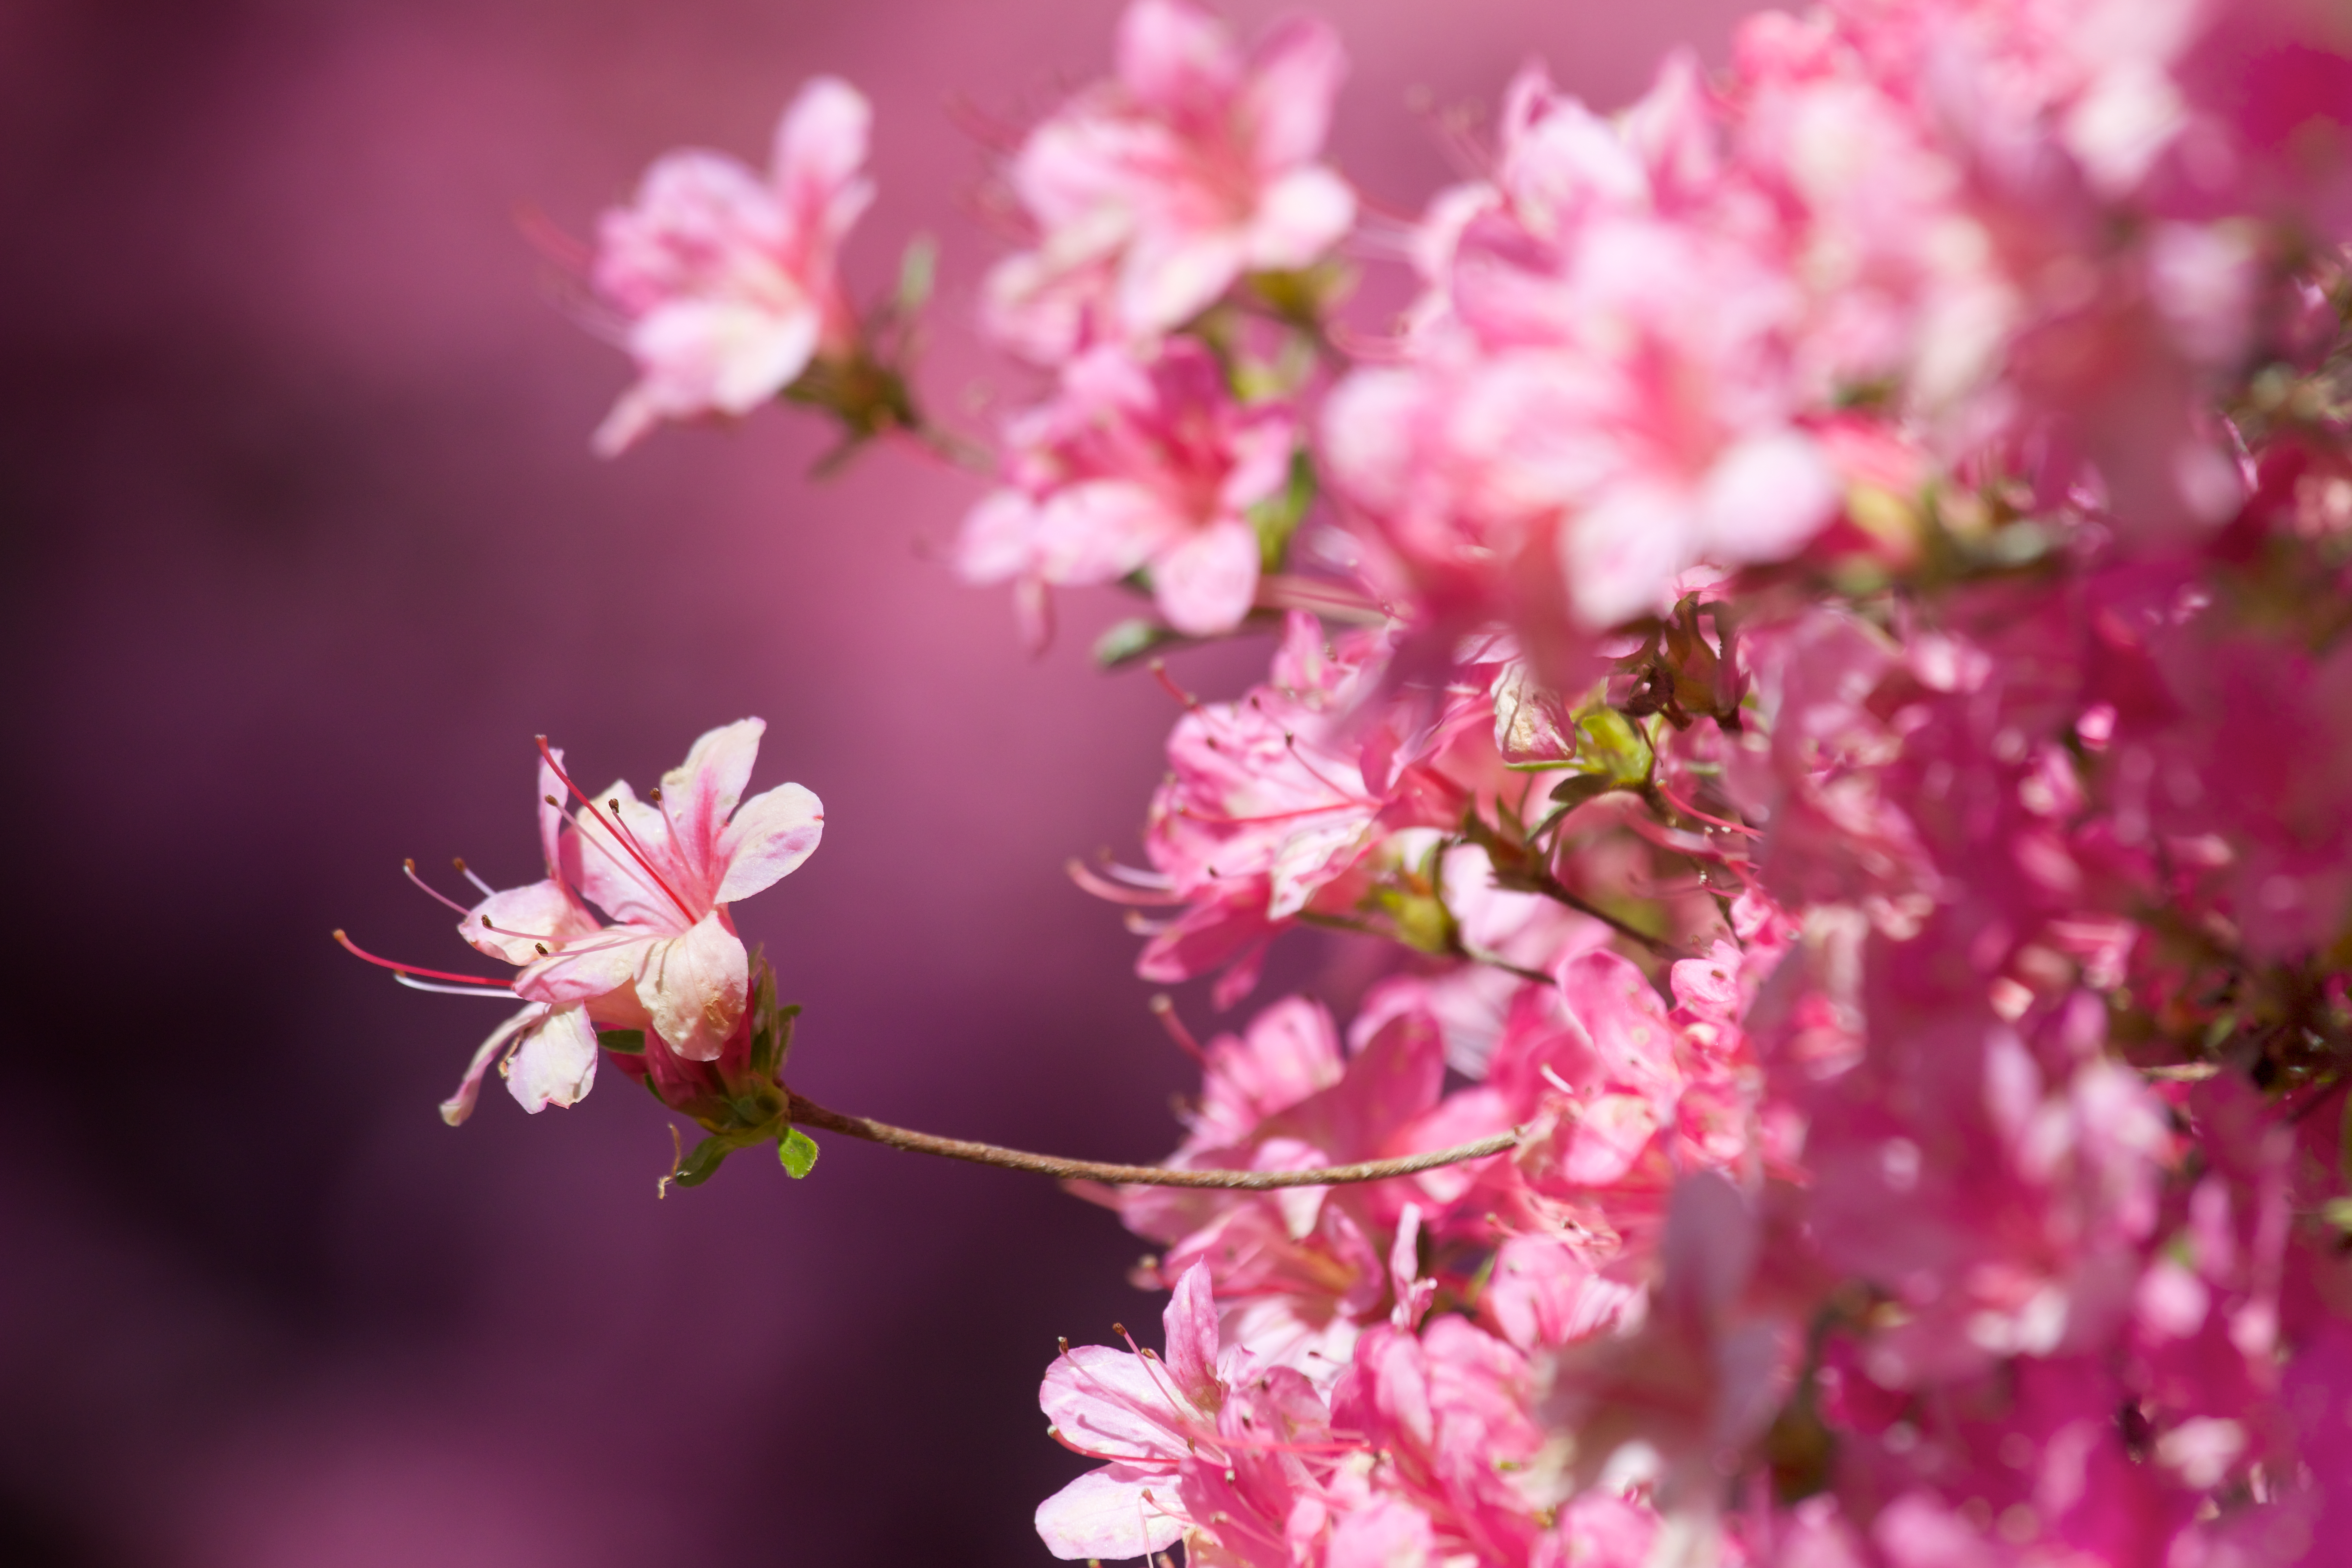 Hãy chiêm ngưỡng vẻ đẹp tuyệt vời của hoa anh đào 4k trong bức tranh tuyệt đẹp này. Màu hồng pastel nhẹ nhàng và độ phân giải cao sẽ khiến bạn cảm thấy như mình đang đứng dưới tàn anh đào đang rơi rụng trên con đường đầy hoa lá.